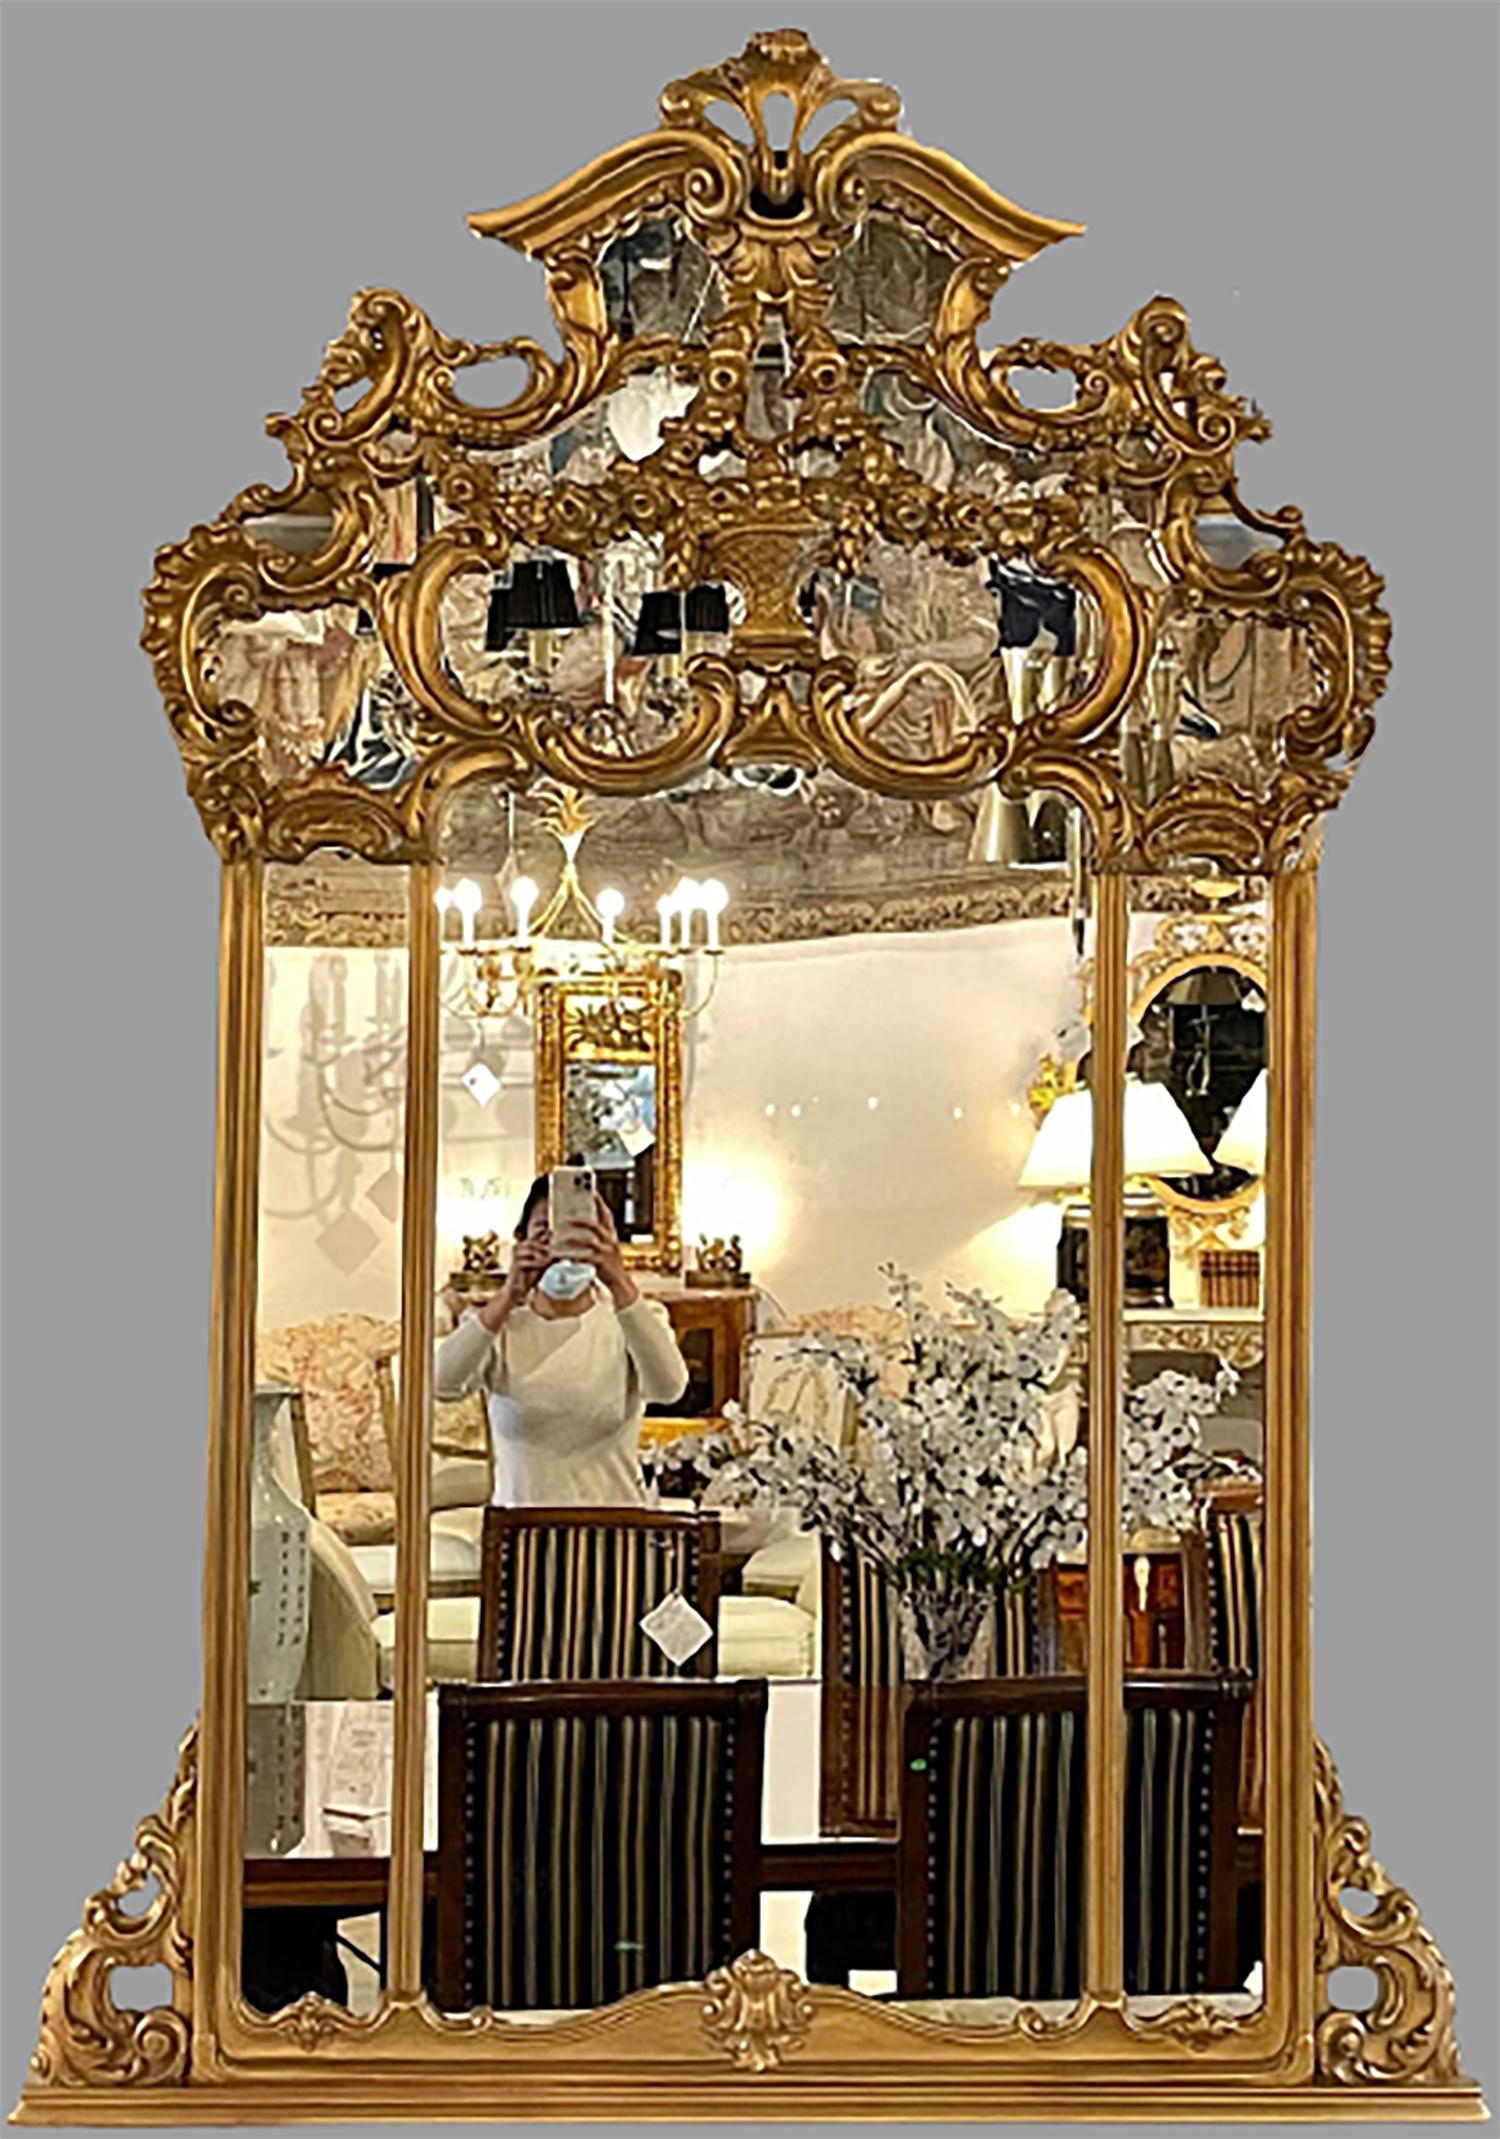 Giltwood über dem Kaminsims-Spiegel. Dieser Wand- oder Konsolenspiegel ist einfach umwerfend und verleiht jedem Zuhause eine schöne Reflexion. Die klare Mitte Spiegel flankiert in einem geschnitzten vergoldeten Rahmen von Louis XVI Mode und Design